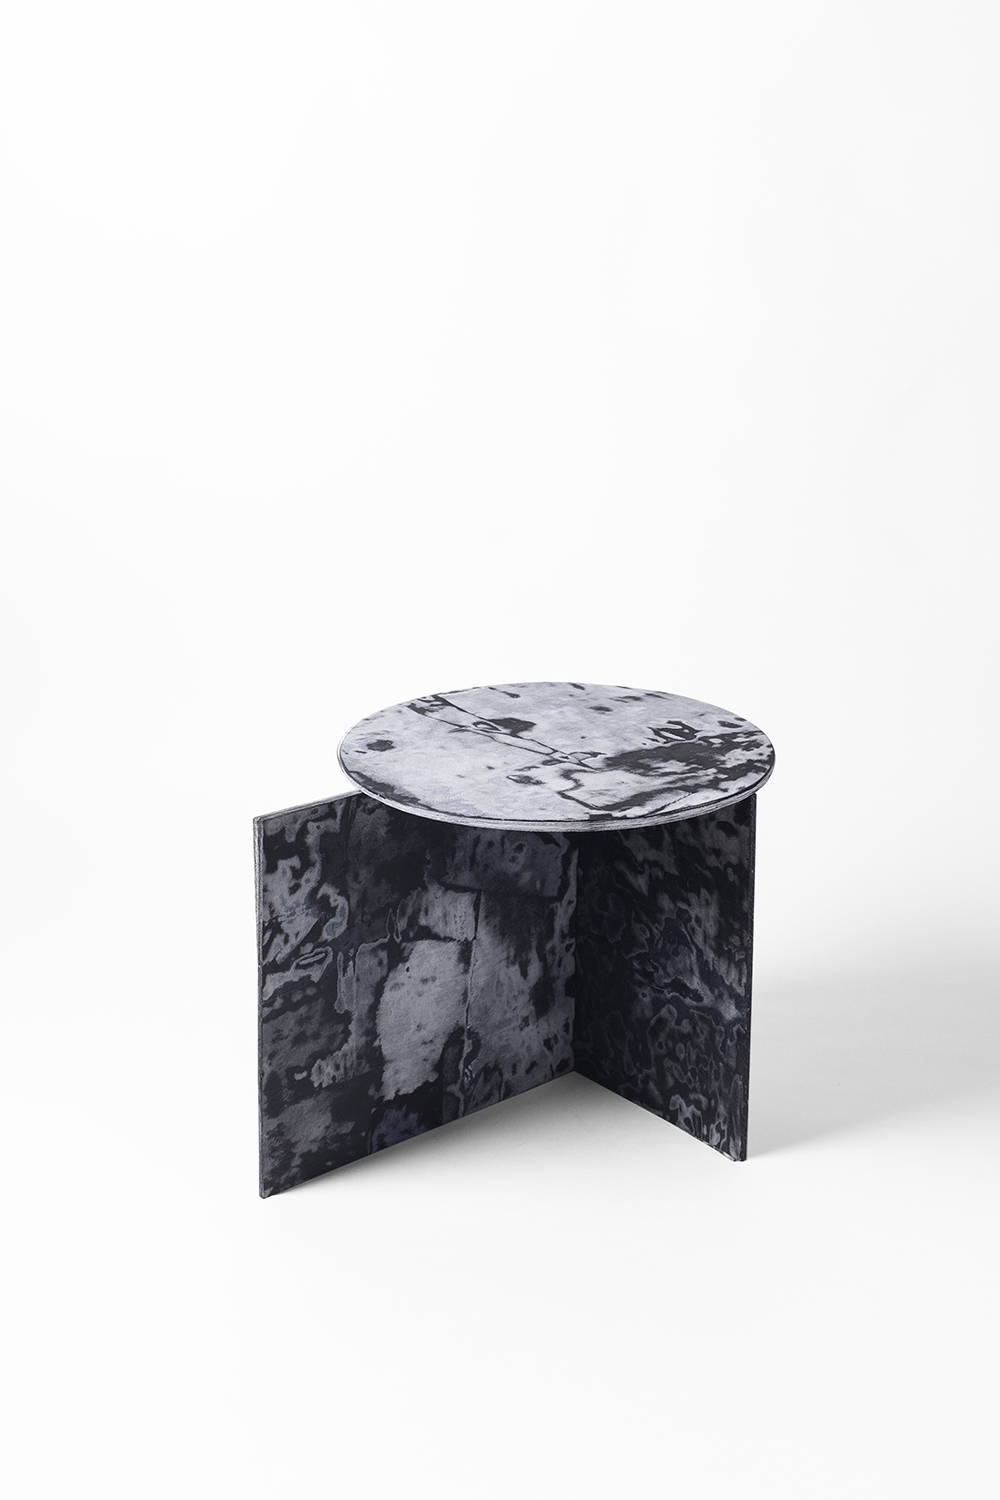 Ten stolik Was zaskoczy – wygląda jak marmurowy, ale zrobiono go ze zrecyklingowanych dżinsów